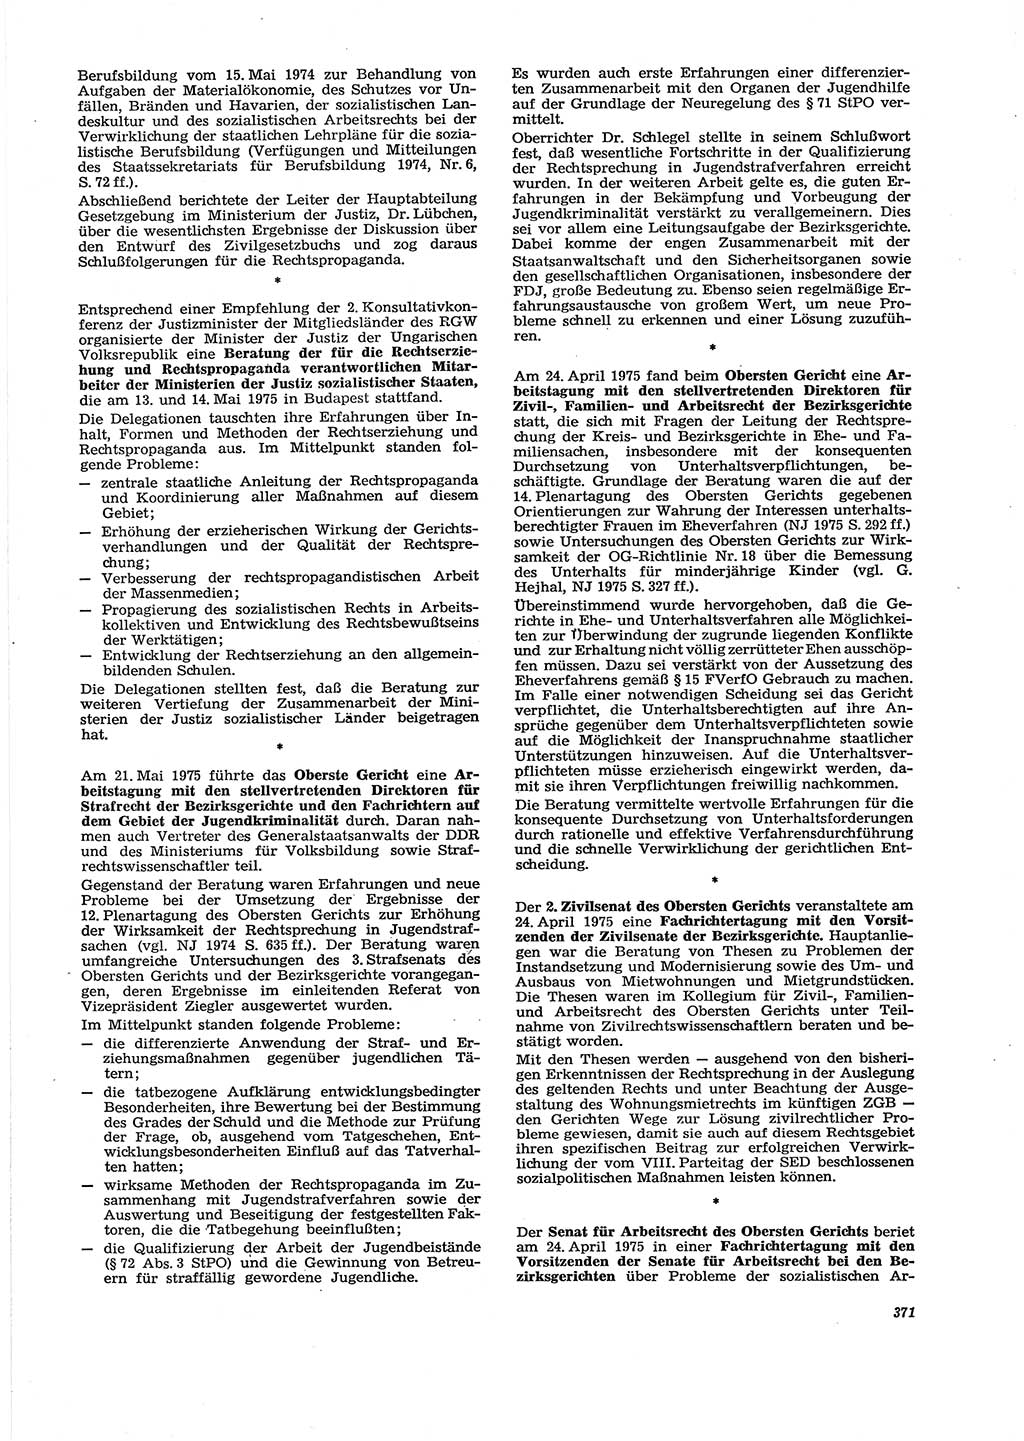 Neue Justiz (NJ), Zeitschrift für Recht und Rechtswissenschaft [Deutsche Demokratische Republik (DDR)], 29. Jahrgang 1975, Seite 371 (NJ DDR 1975, S. 371)